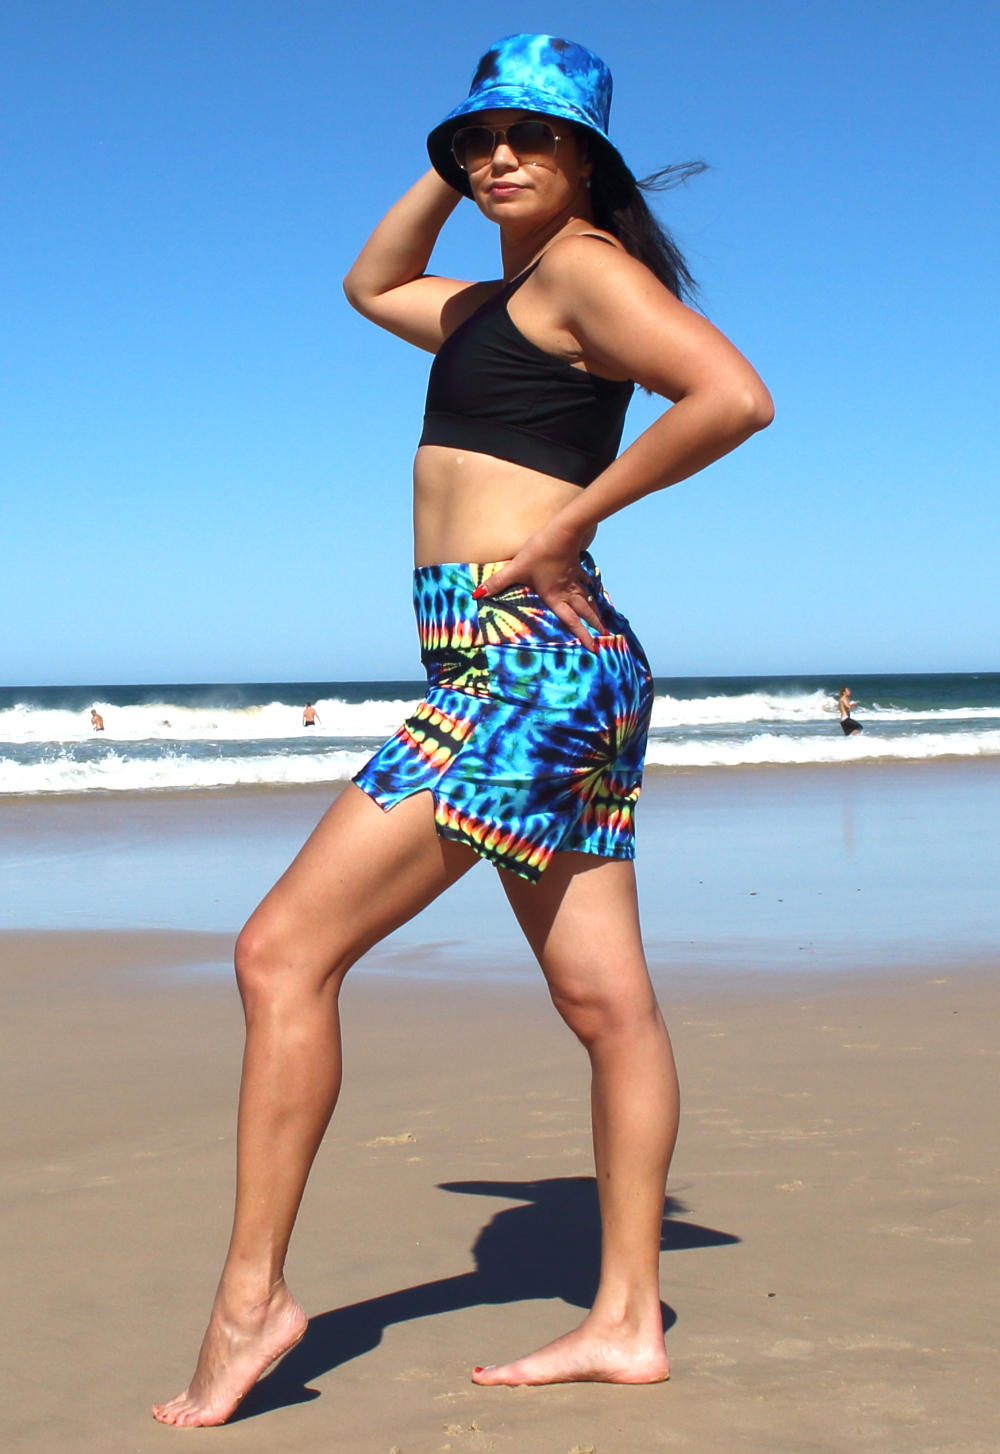 https://oceanroadswimwear.com.au/wp-content/uploads/2022/08/womens-loose-fit-tie-dye-swim-shorts.jpg